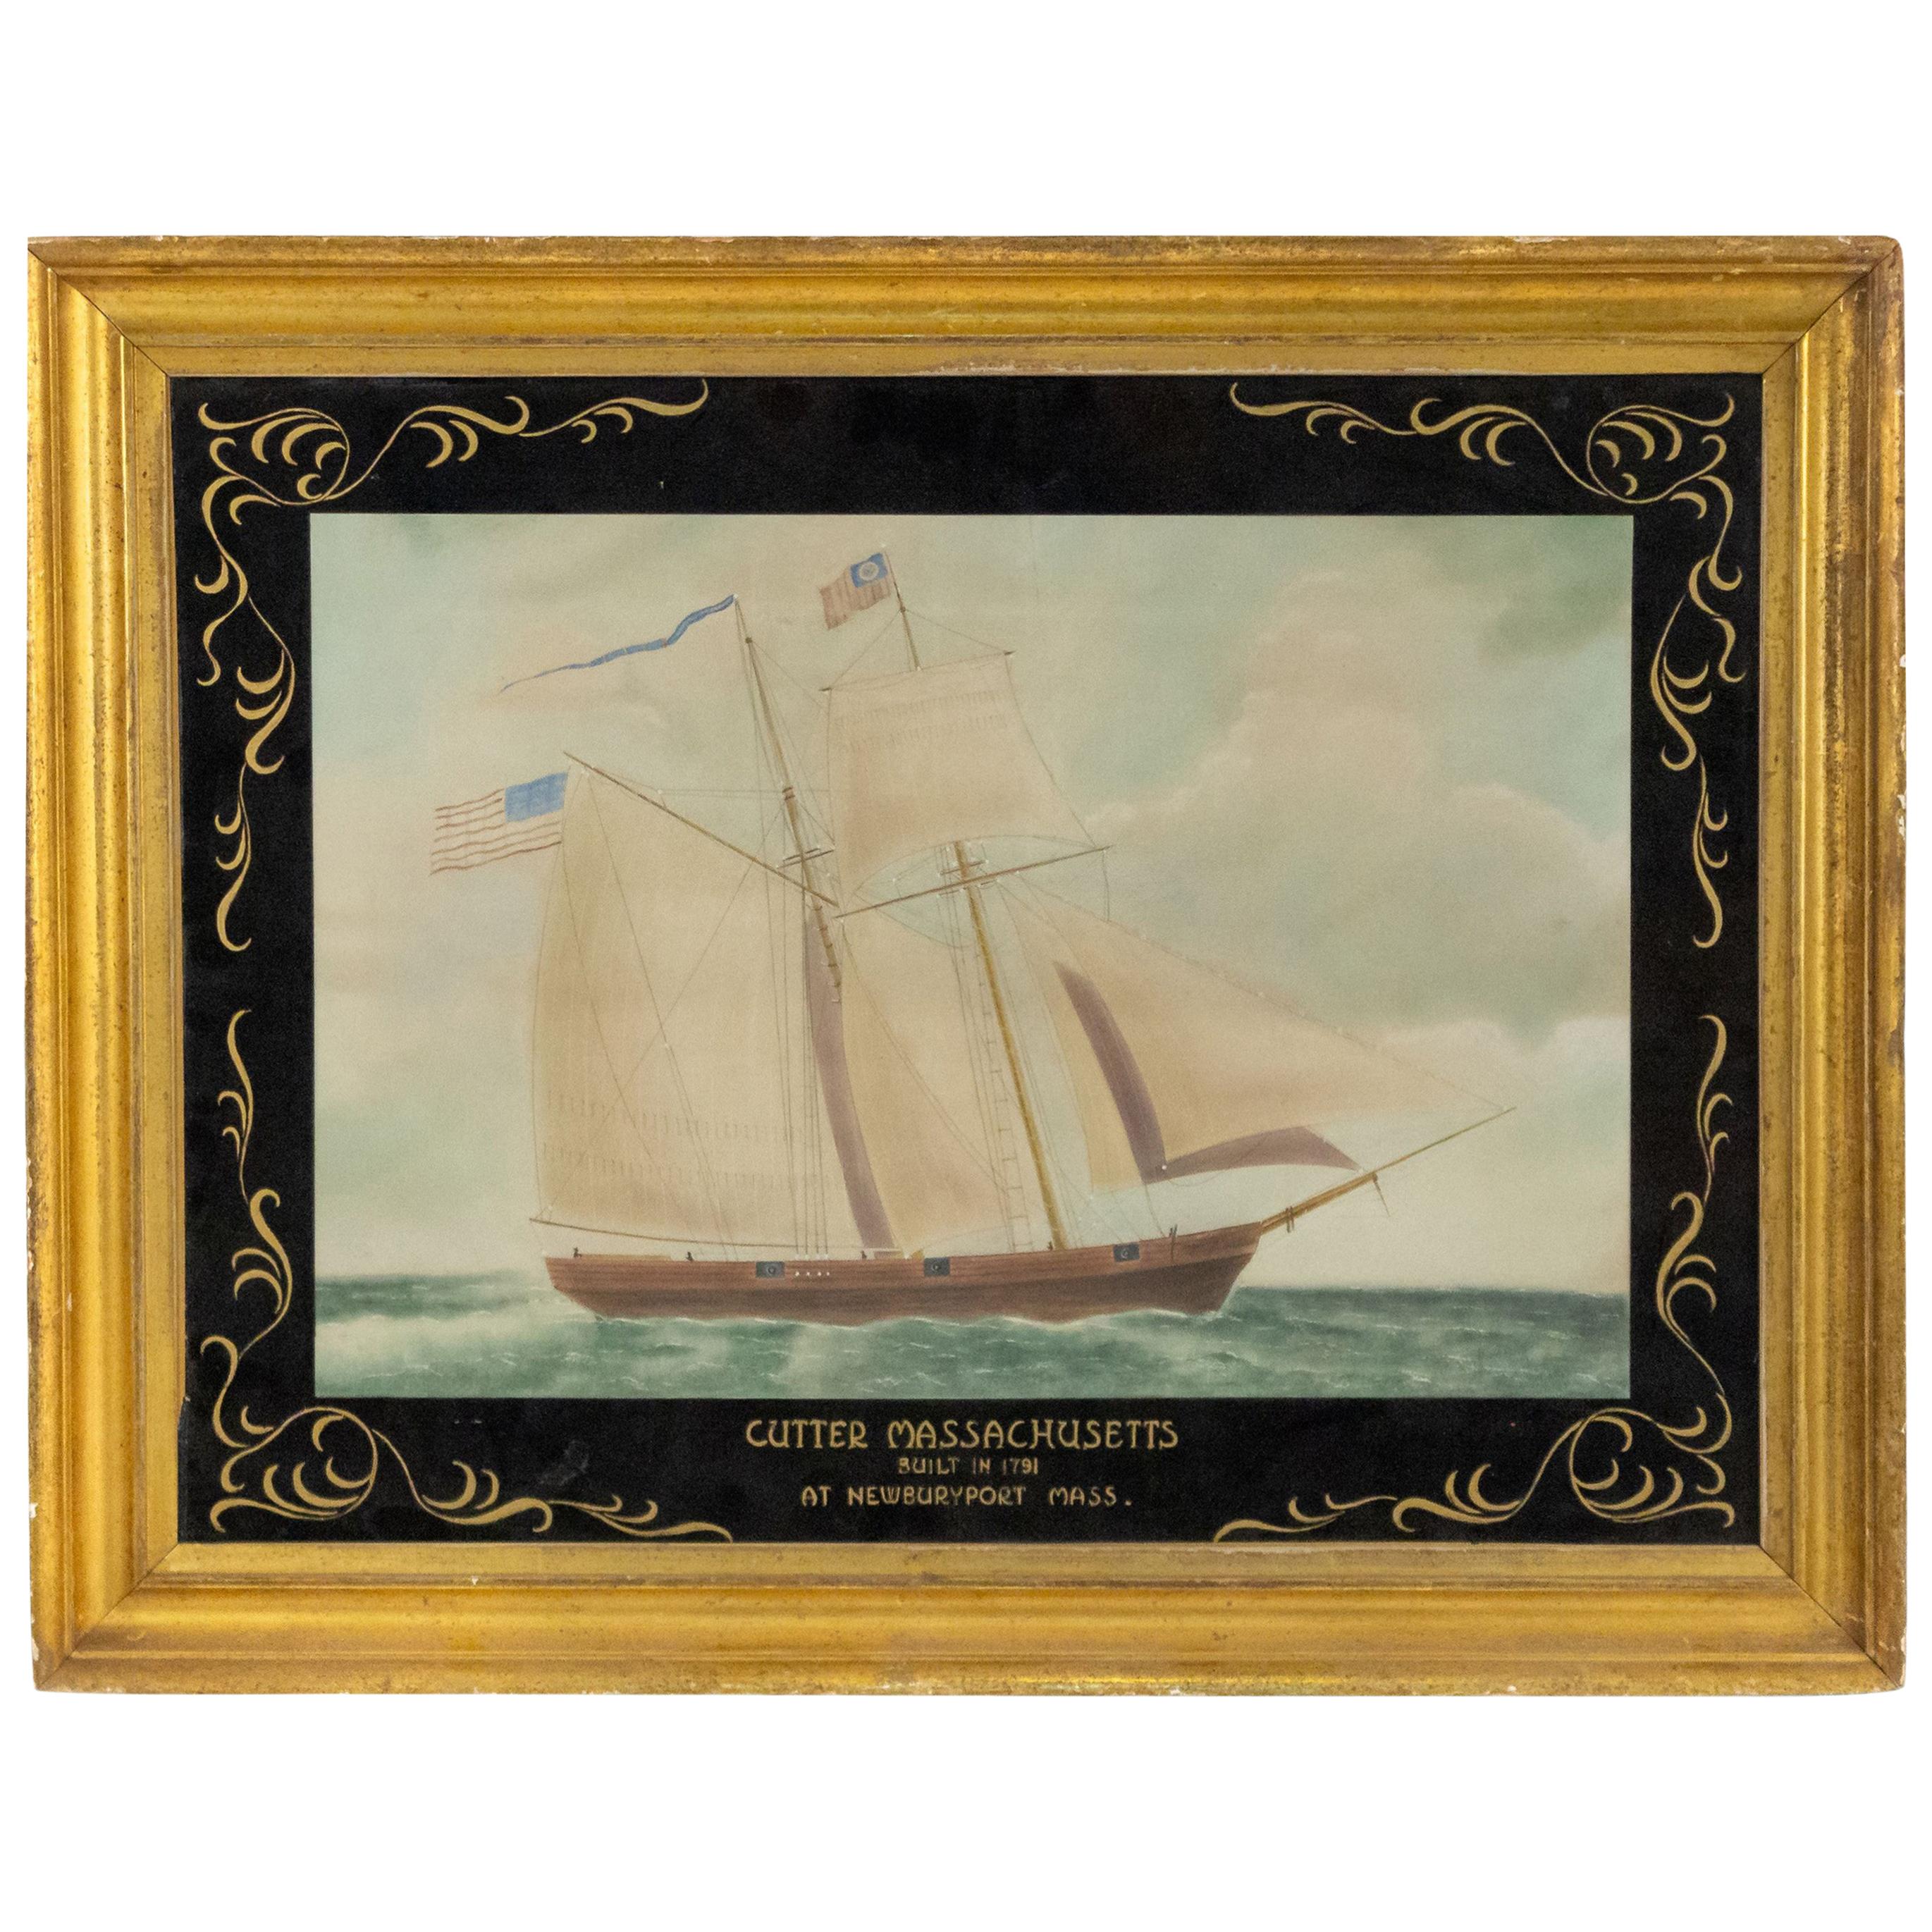 Aquarelle nautique victorienne du 19e siècle représentant le tailleur du Massachusetts